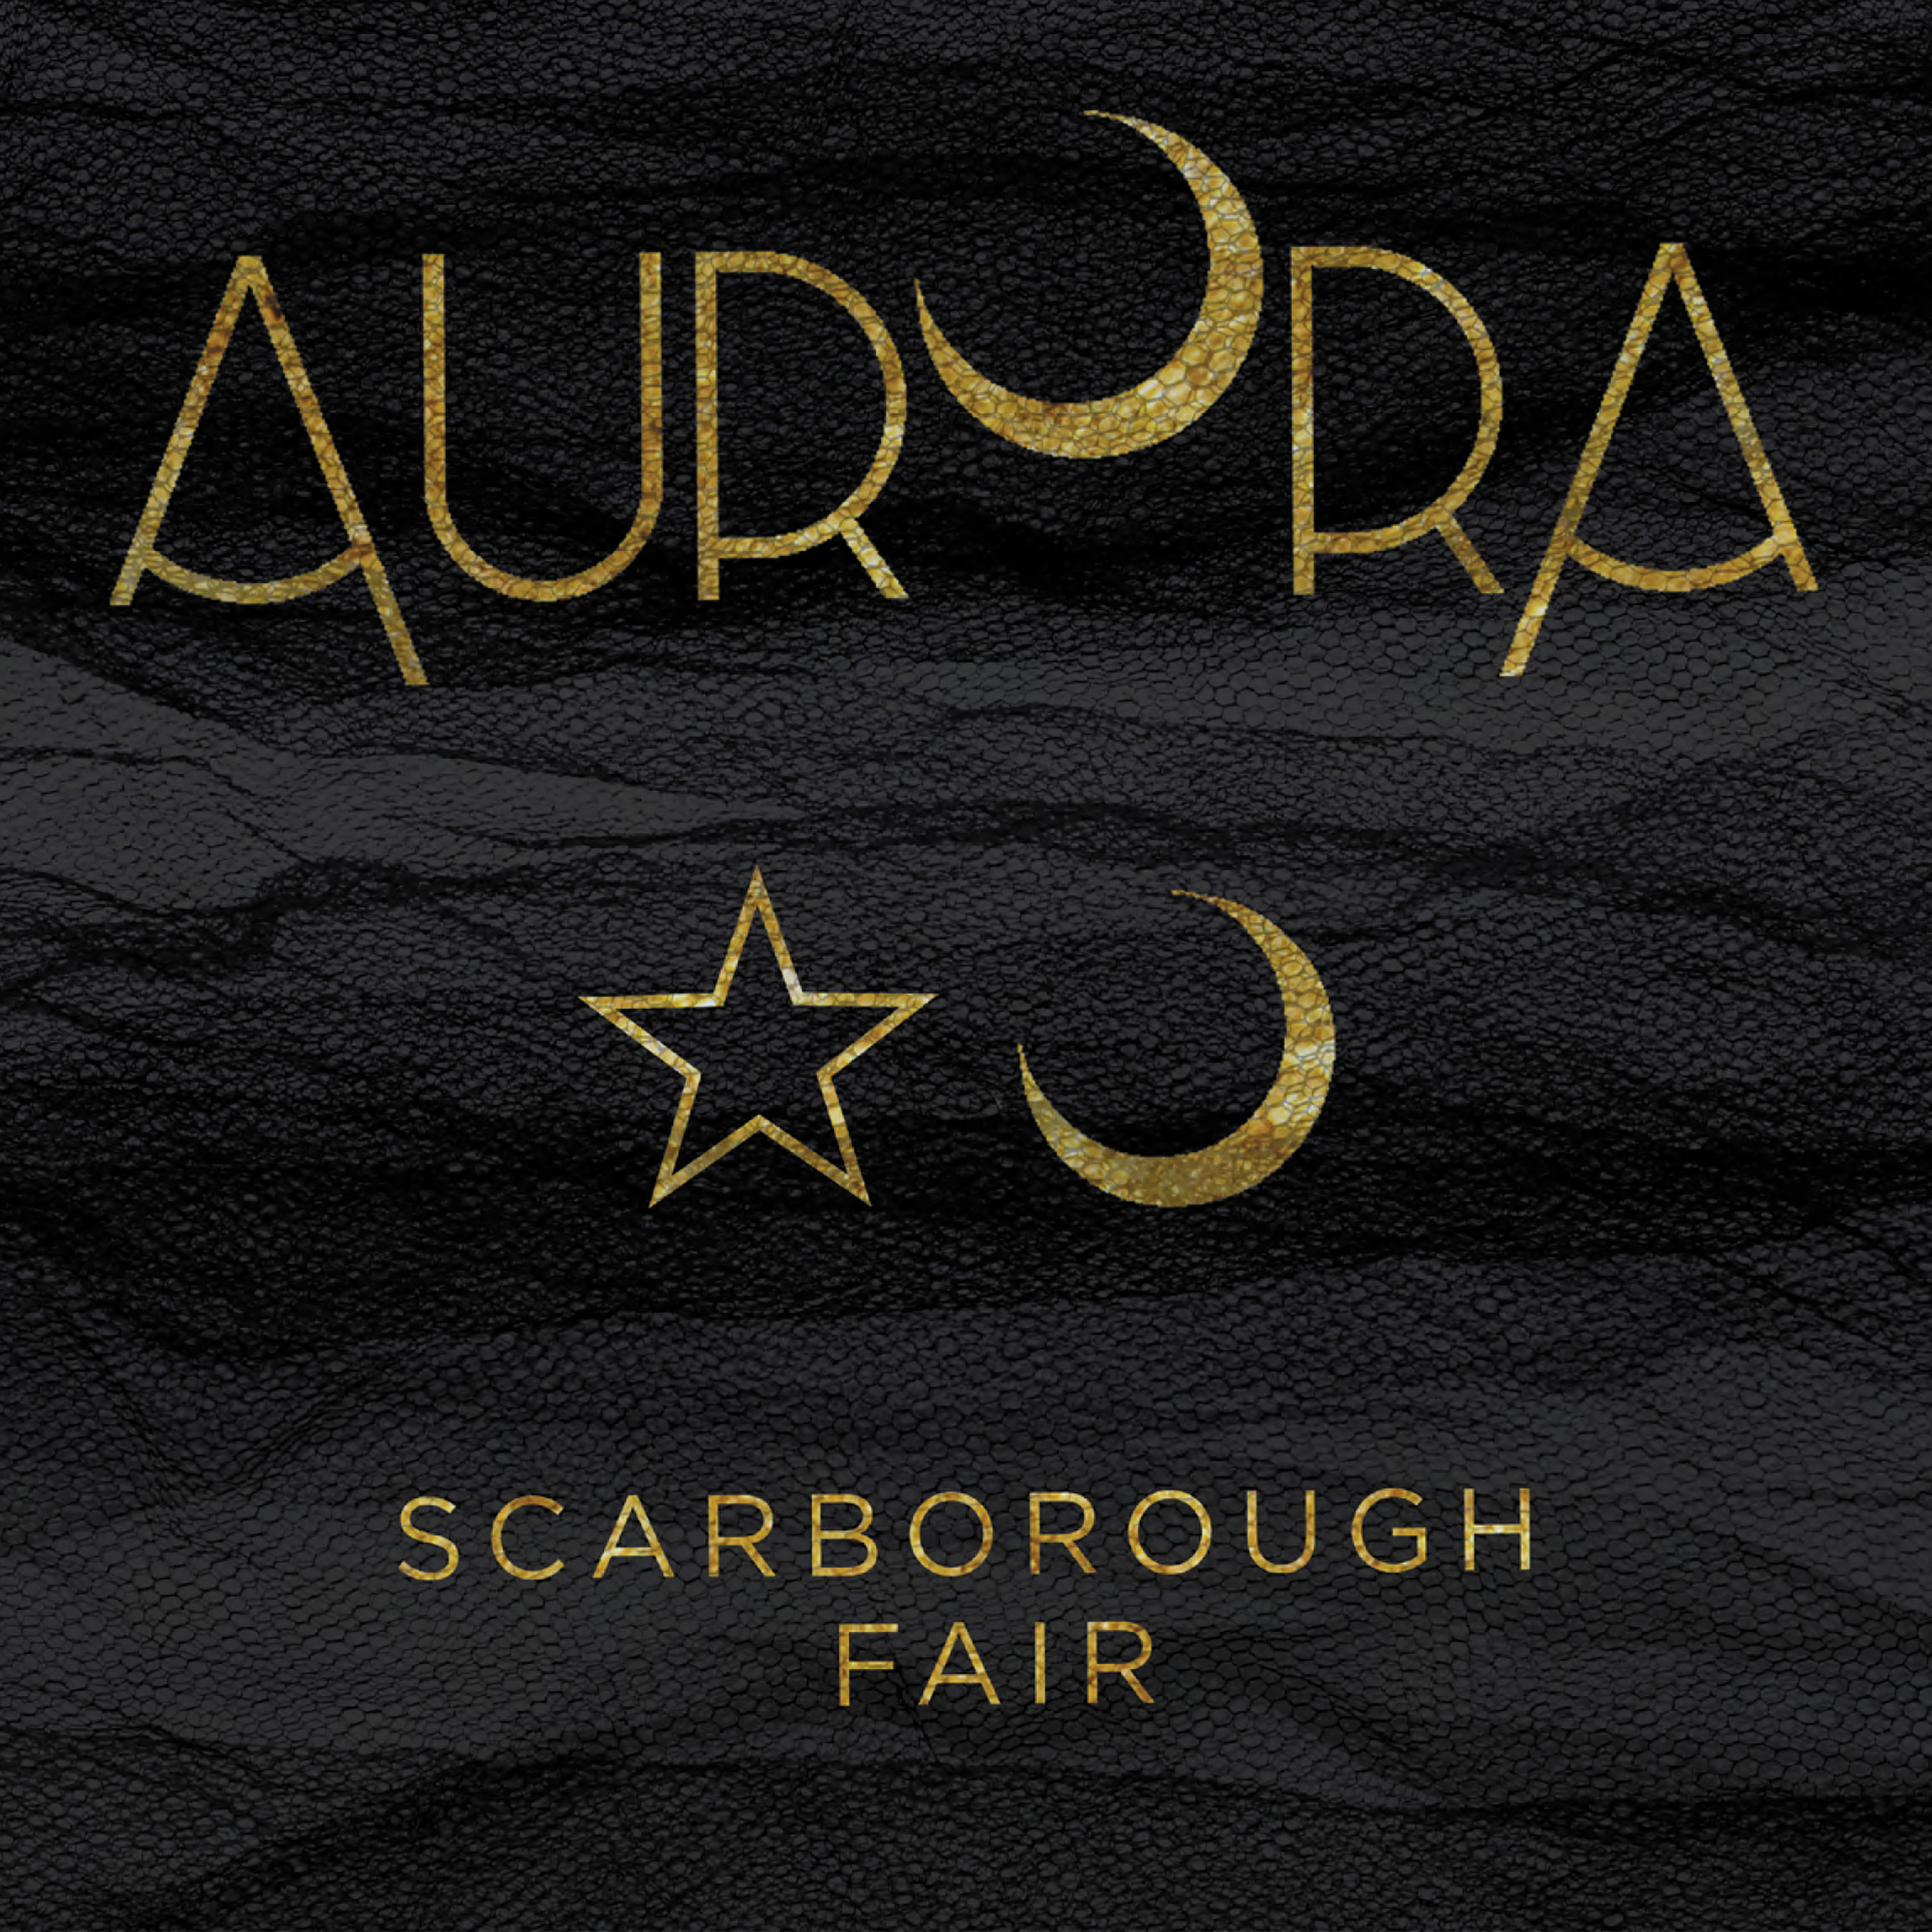 Scarborough fair  Scarborough fair, Music lyrics, Lyrics